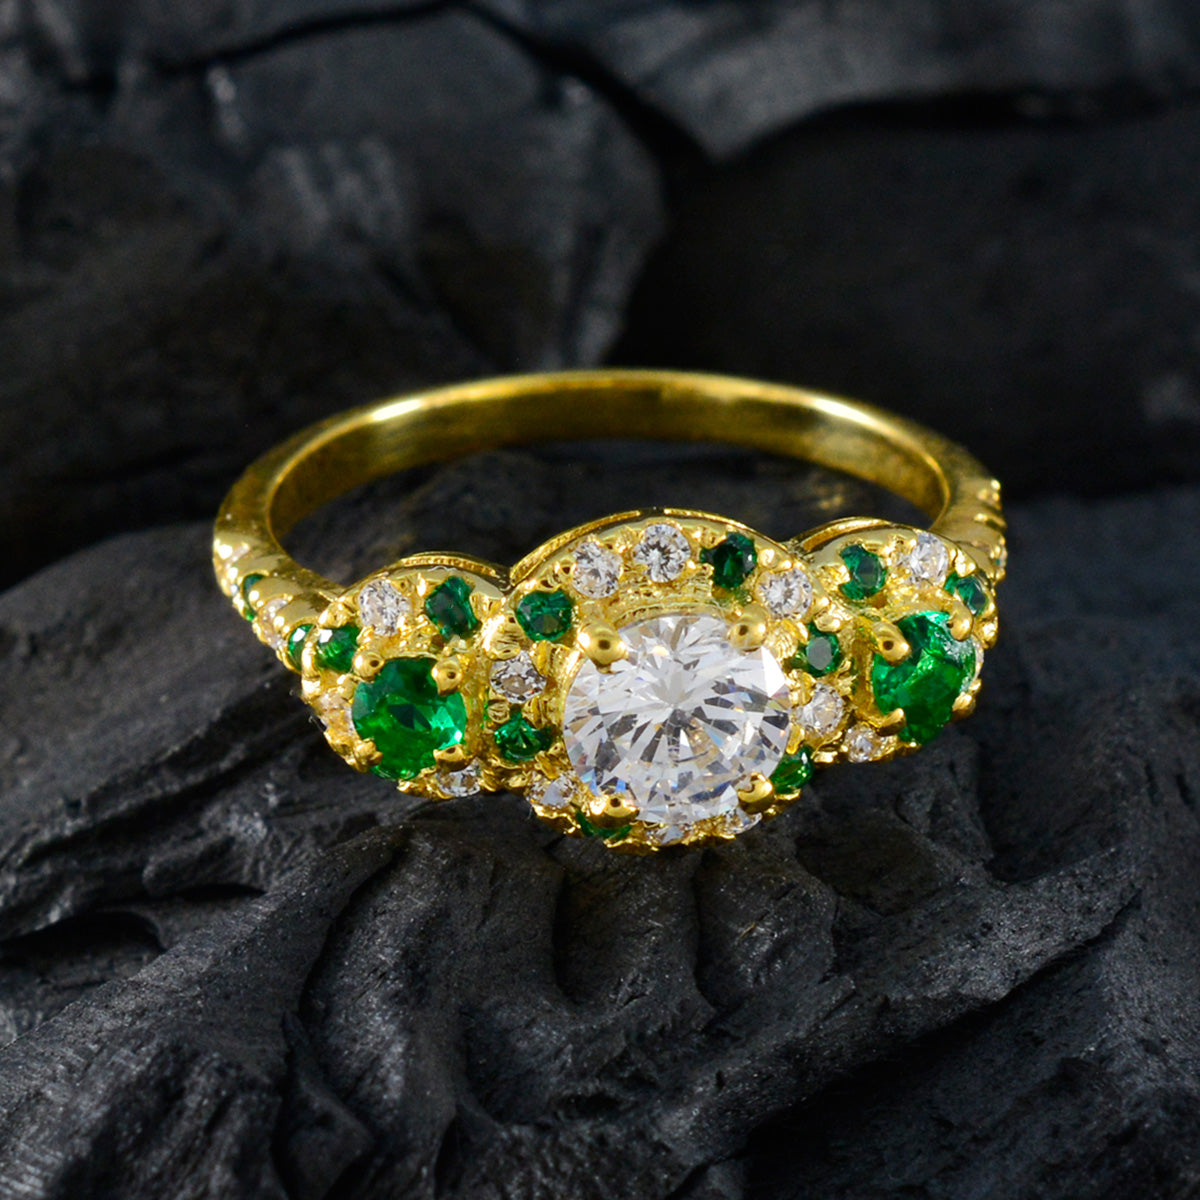 Riyo Oogverblindende zilveren ring met geelgouden smaragdgroene CZ-steen ronde vorm Prong-instelling Handamde sieraden Halloween-ring